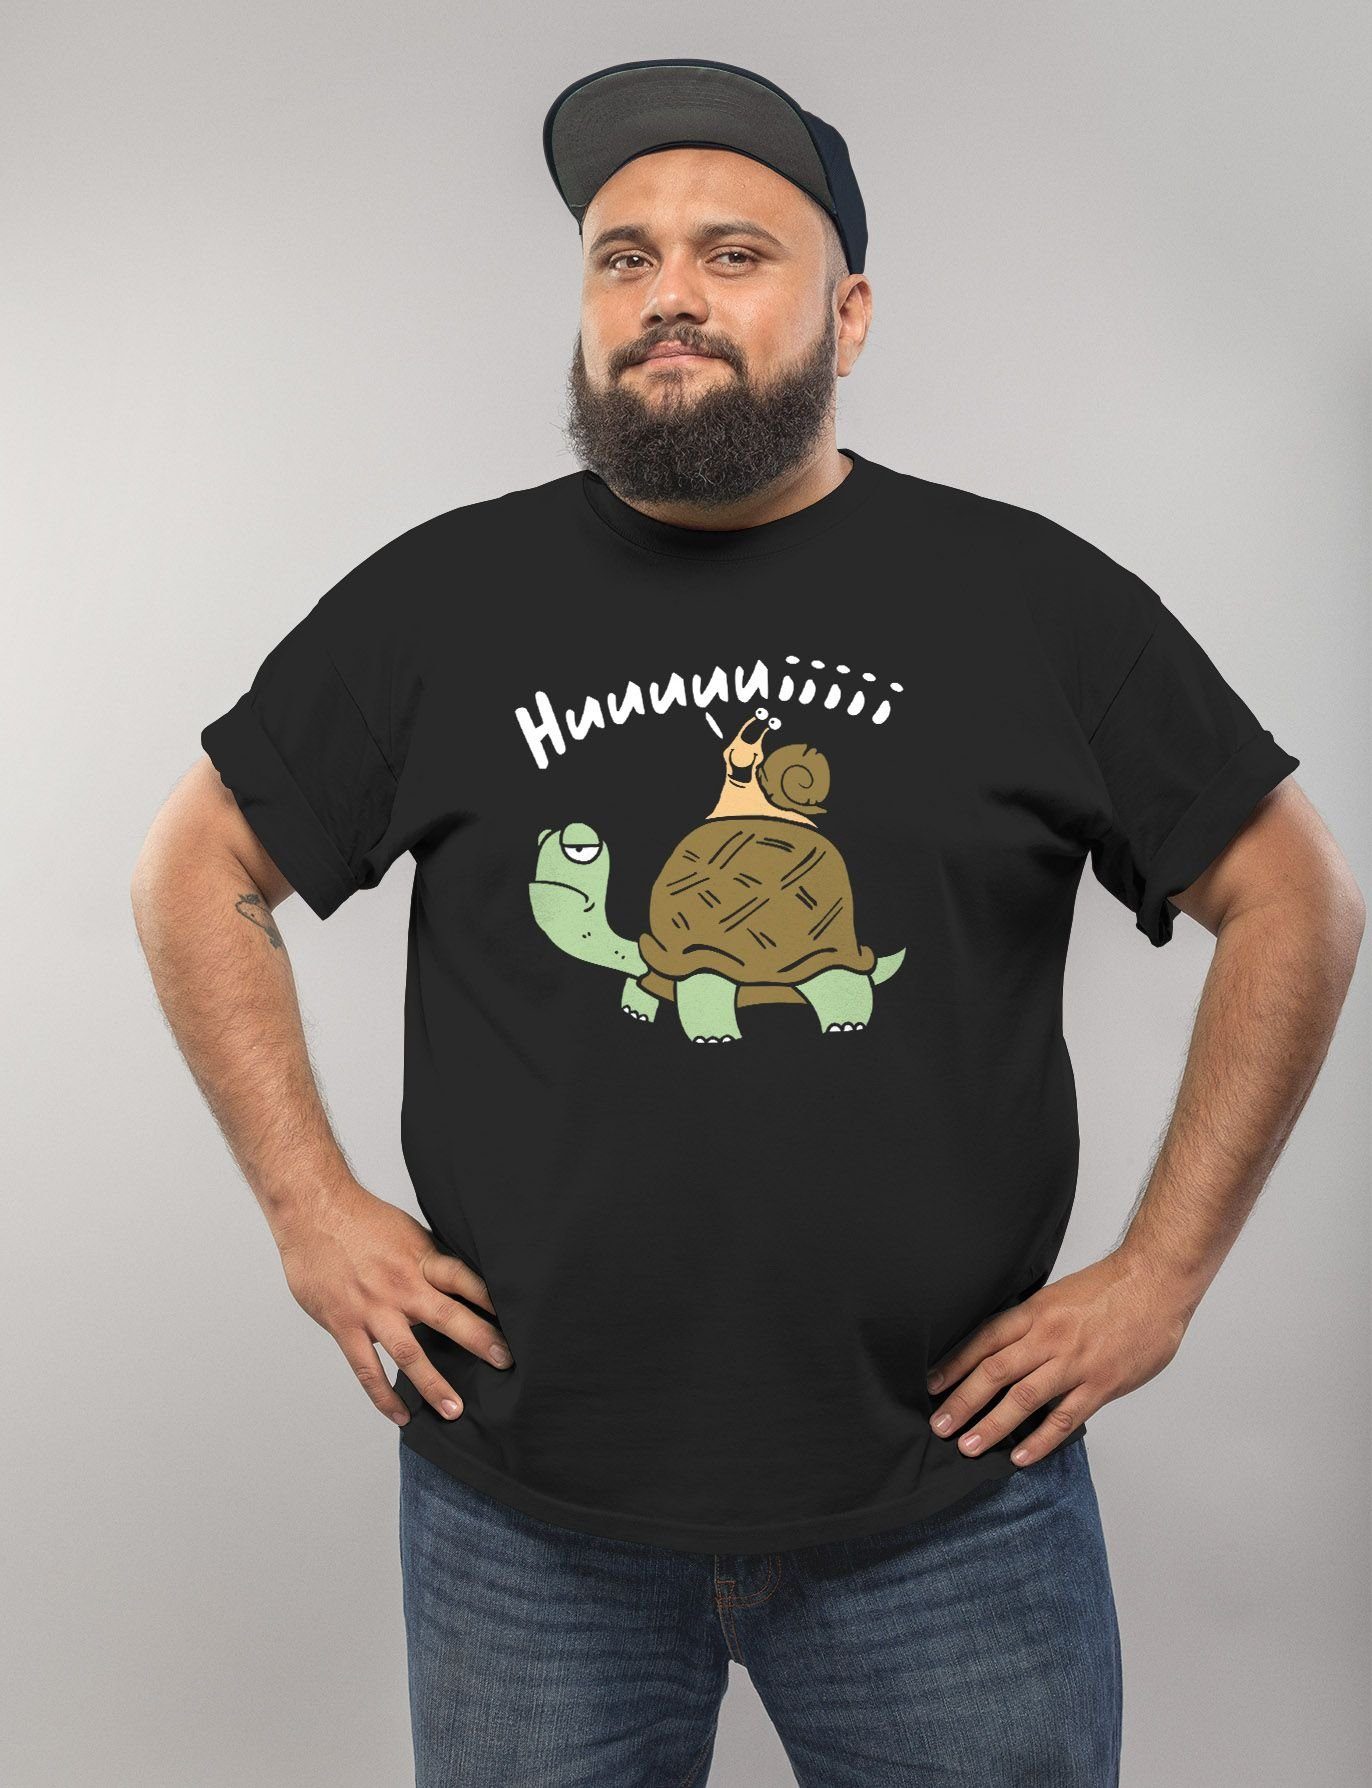 mit schwarz Schildkröte Huuuuiiii Lustig Spruch Witzig Moonworks® T-Shirt Print Herren Scherz lustig Comic Print-Shirt MoonWorks Fun-Shirt Schnecke